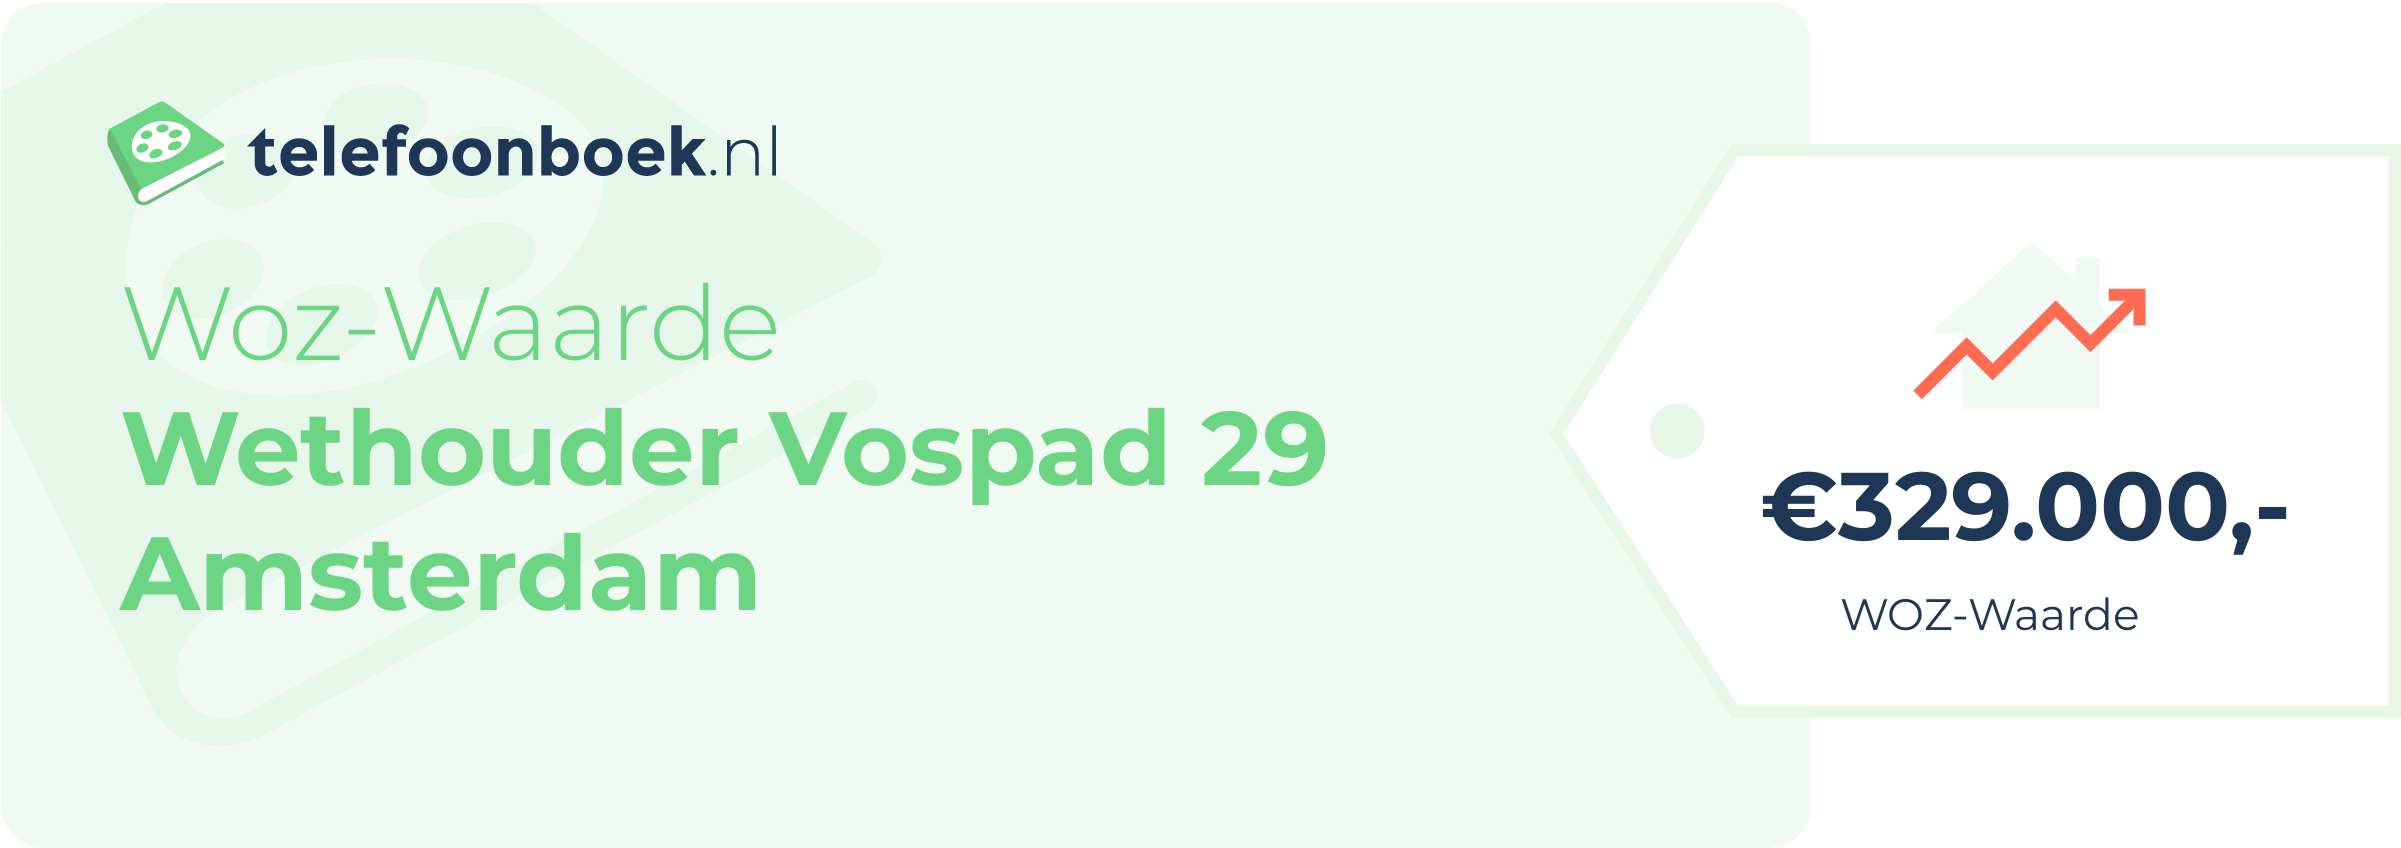 WOZ-waarde Wethouder Vospad 29 Amsterdam